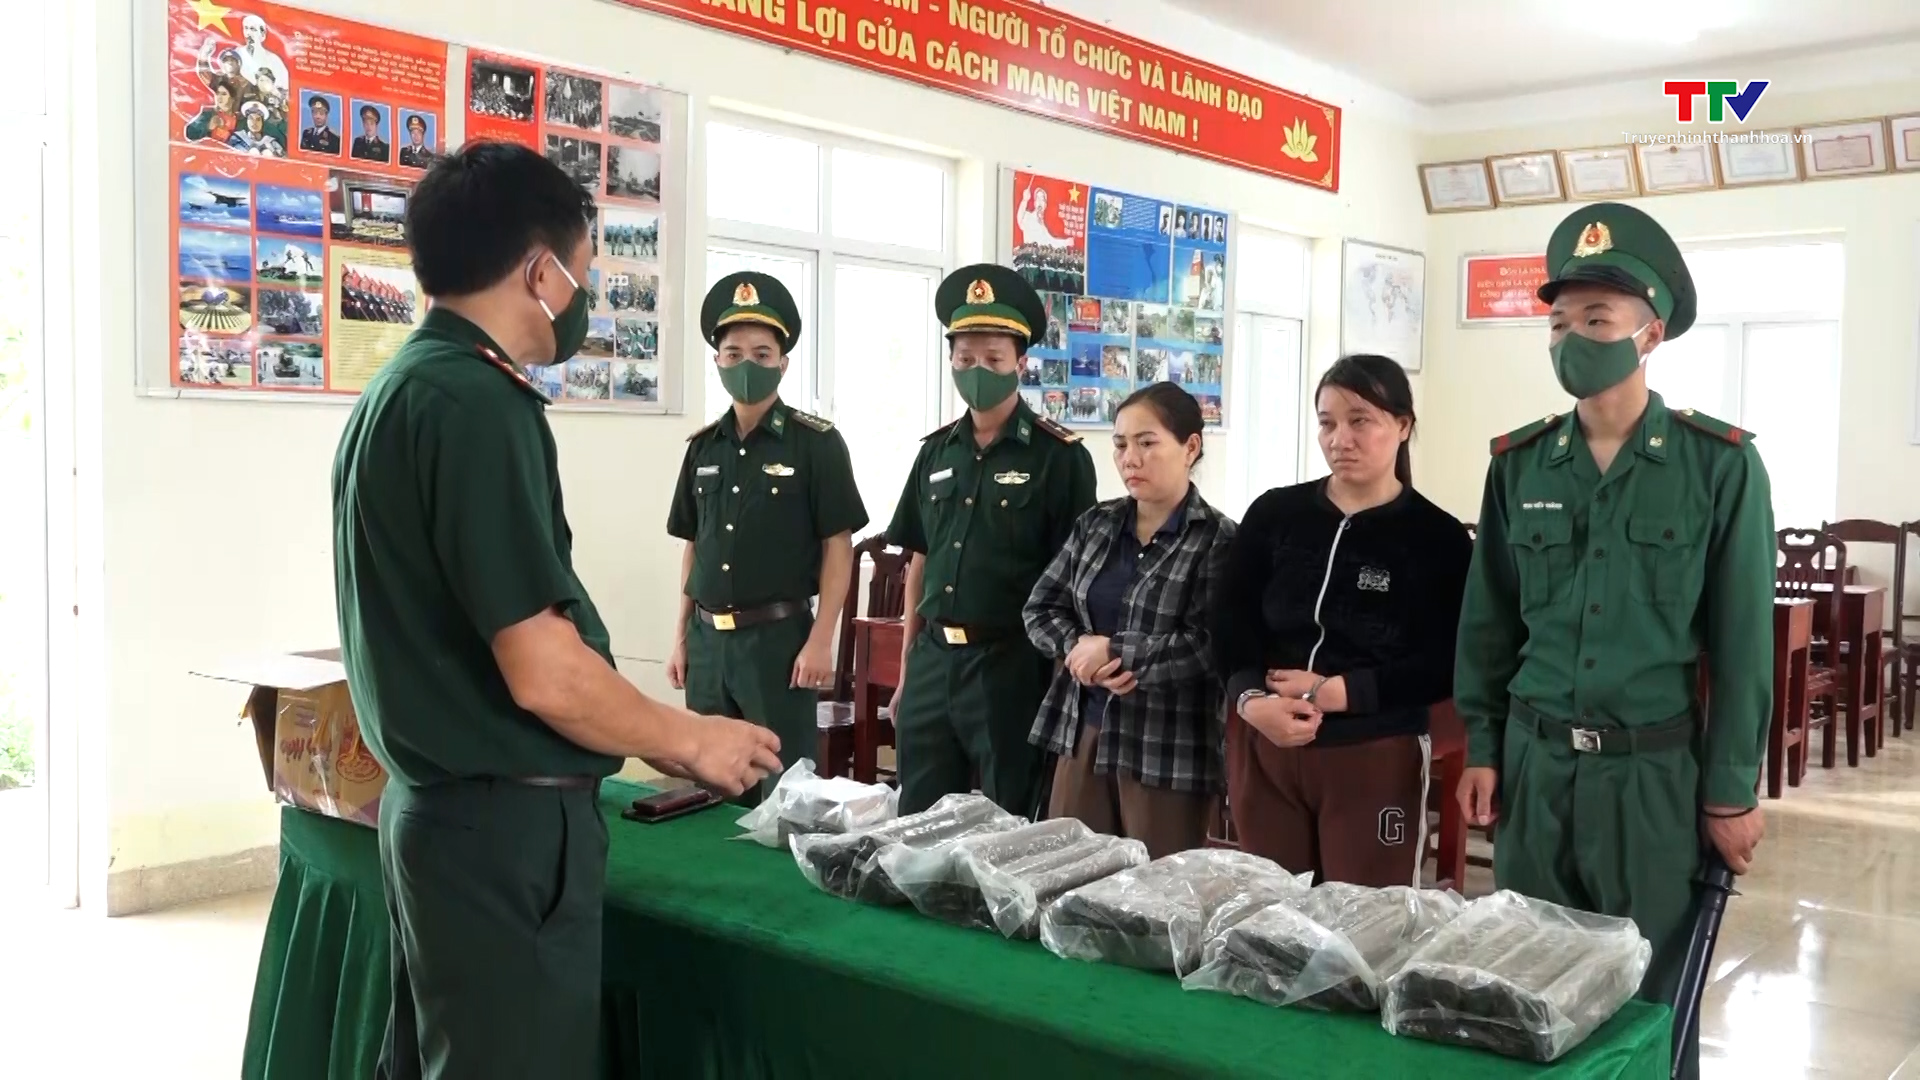 Bộ đội Biên phòng tỉnh Thanh Hóa bắt 2 đối tượng mua bán trái phép vật liệu nổ  - Ảnh 2.